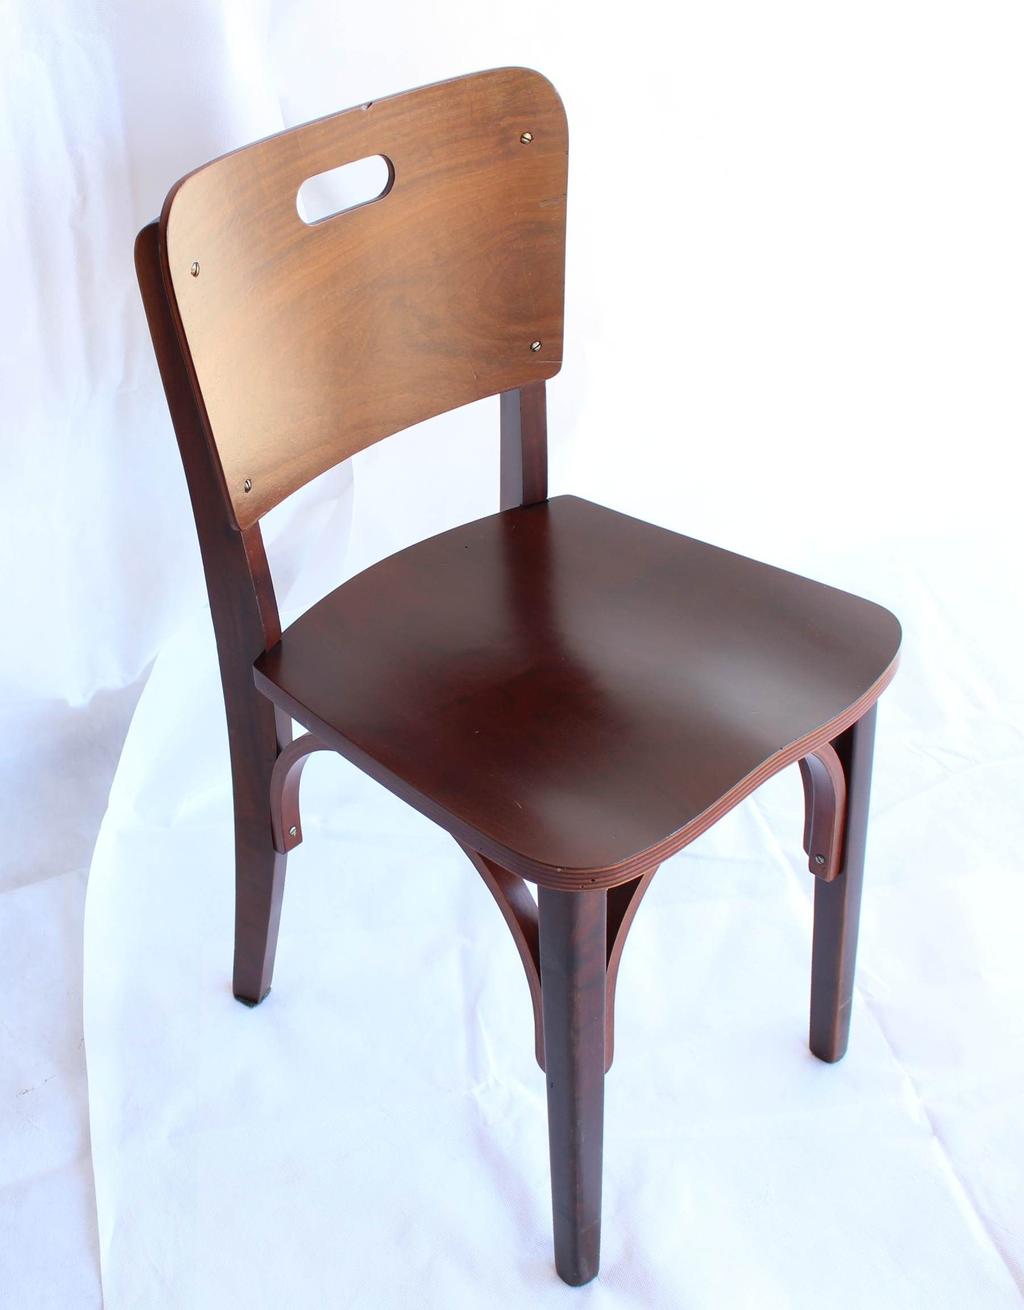 Funções do design - Cadeira 1001 Foi criada para atender a uma grande variedade de públicos; Sua forma deriva das tecnologias de fabricação empregadas, não havendo preocupação estética; A